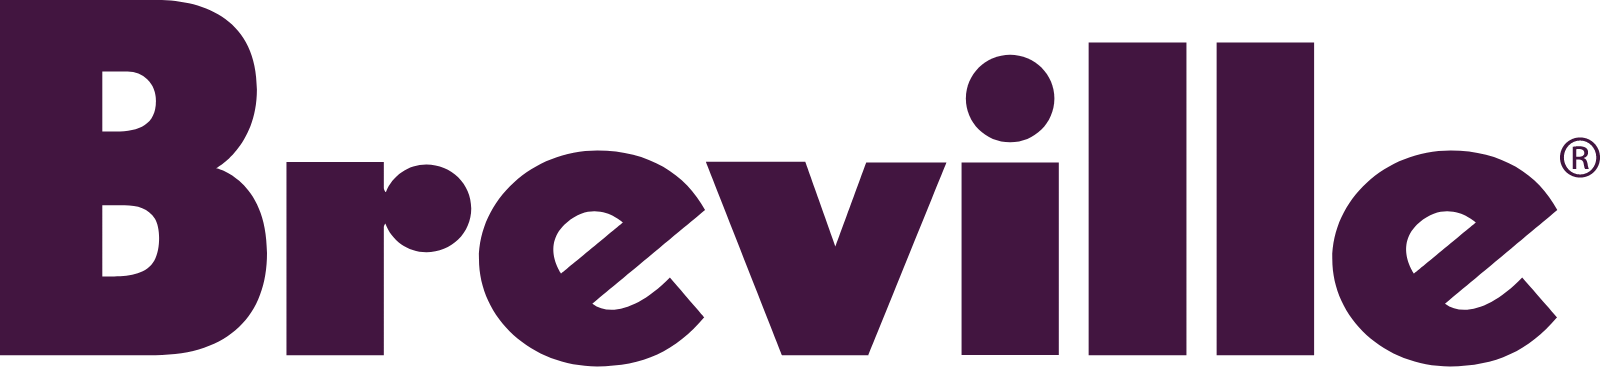 Breville Group logo large (transparent PNG)